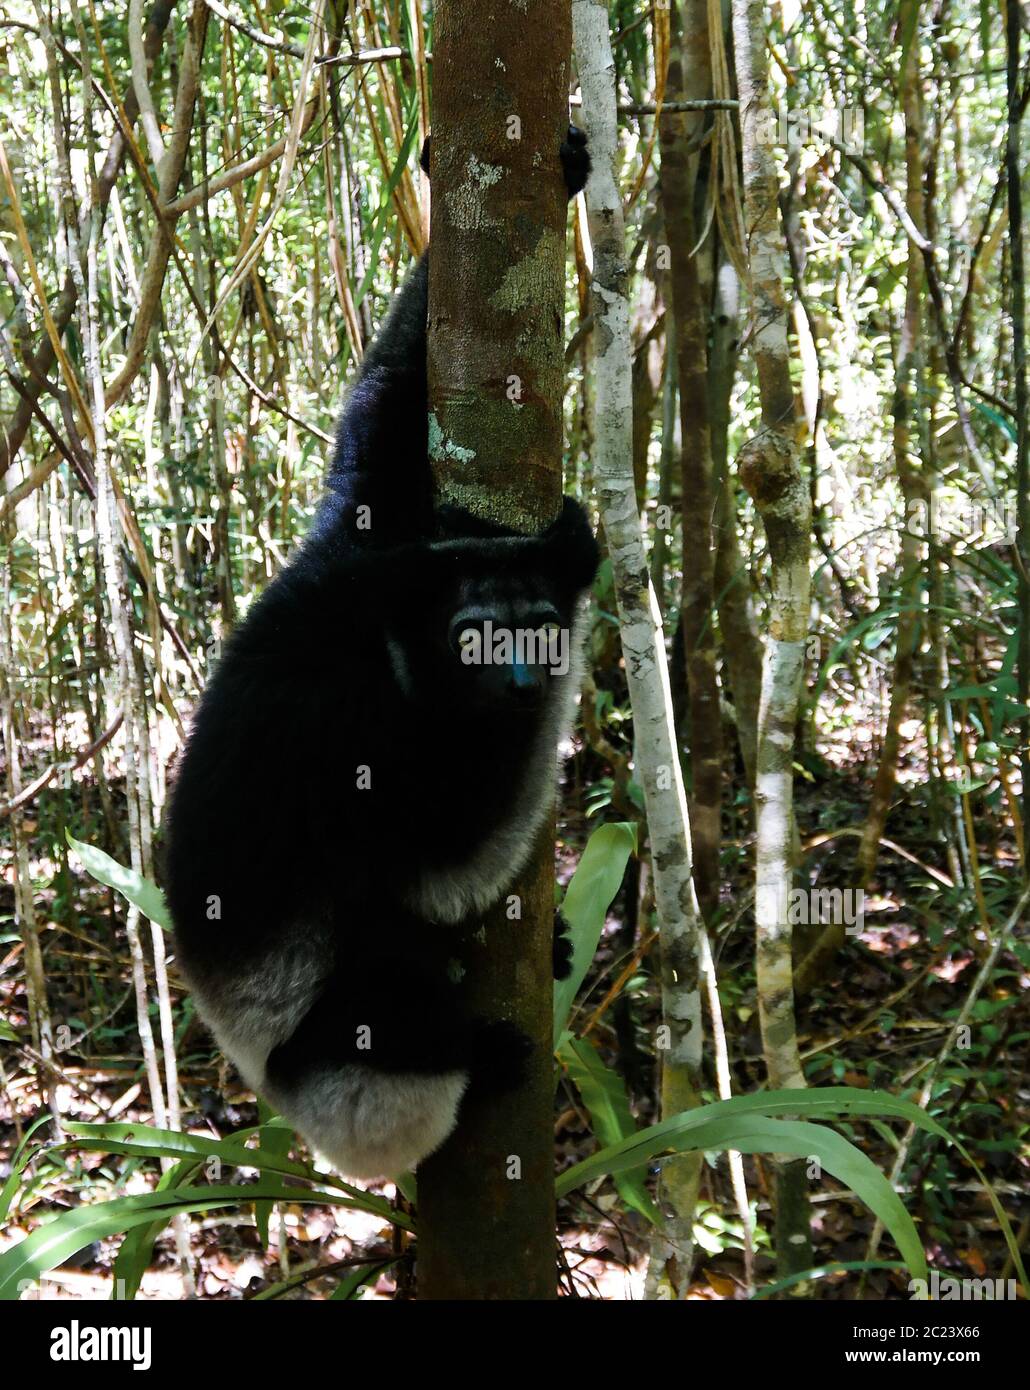 Portrait of Indri Indri lemur at the tree, Atsinanana region, Madagascar Stock Photo